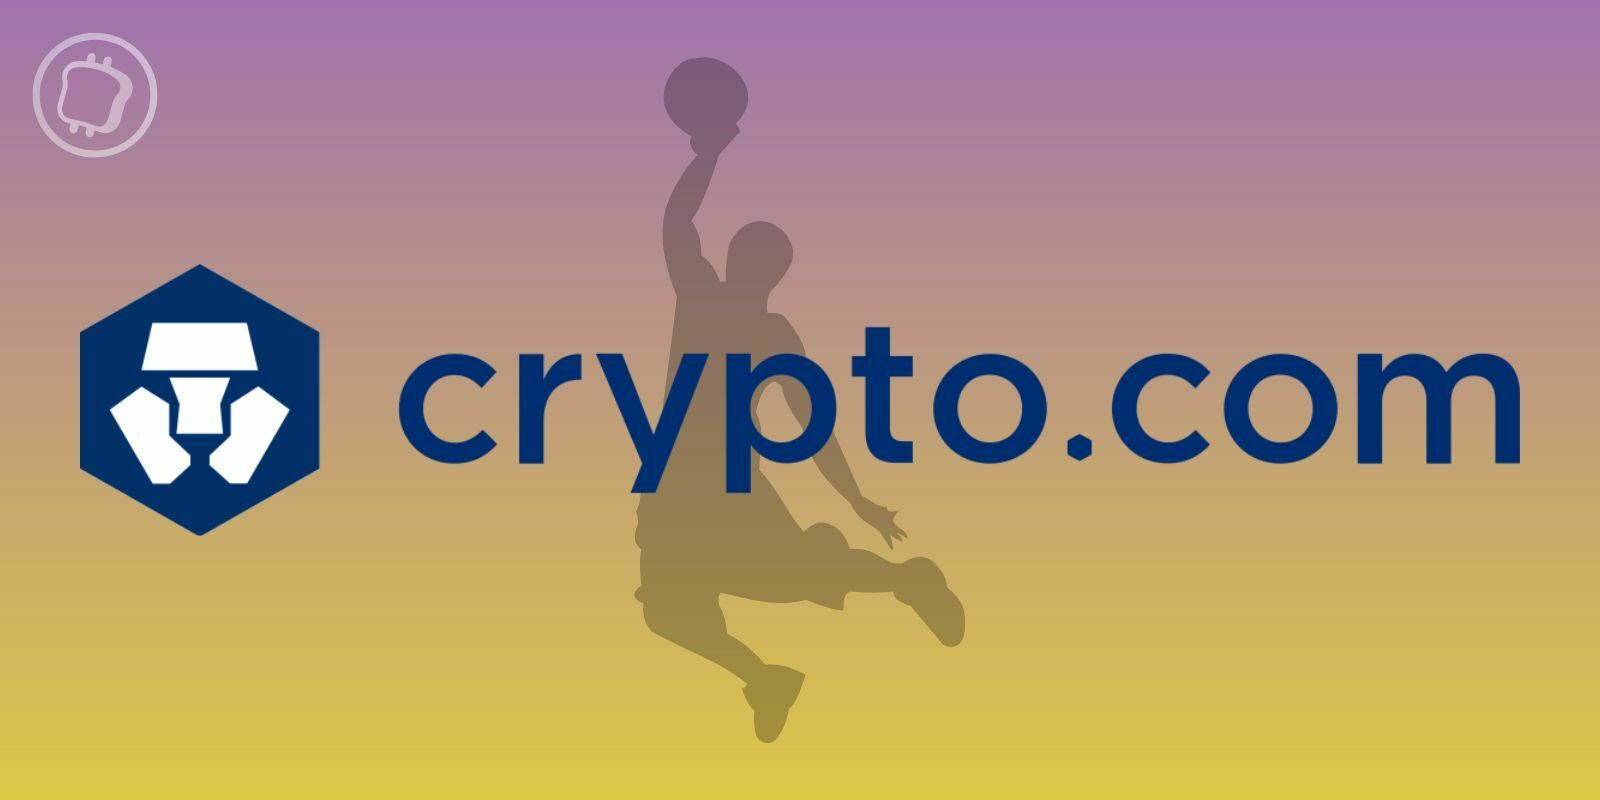 Crypto.com Arena : La mythique salle des Lakers de Los Angeles va être rénovée